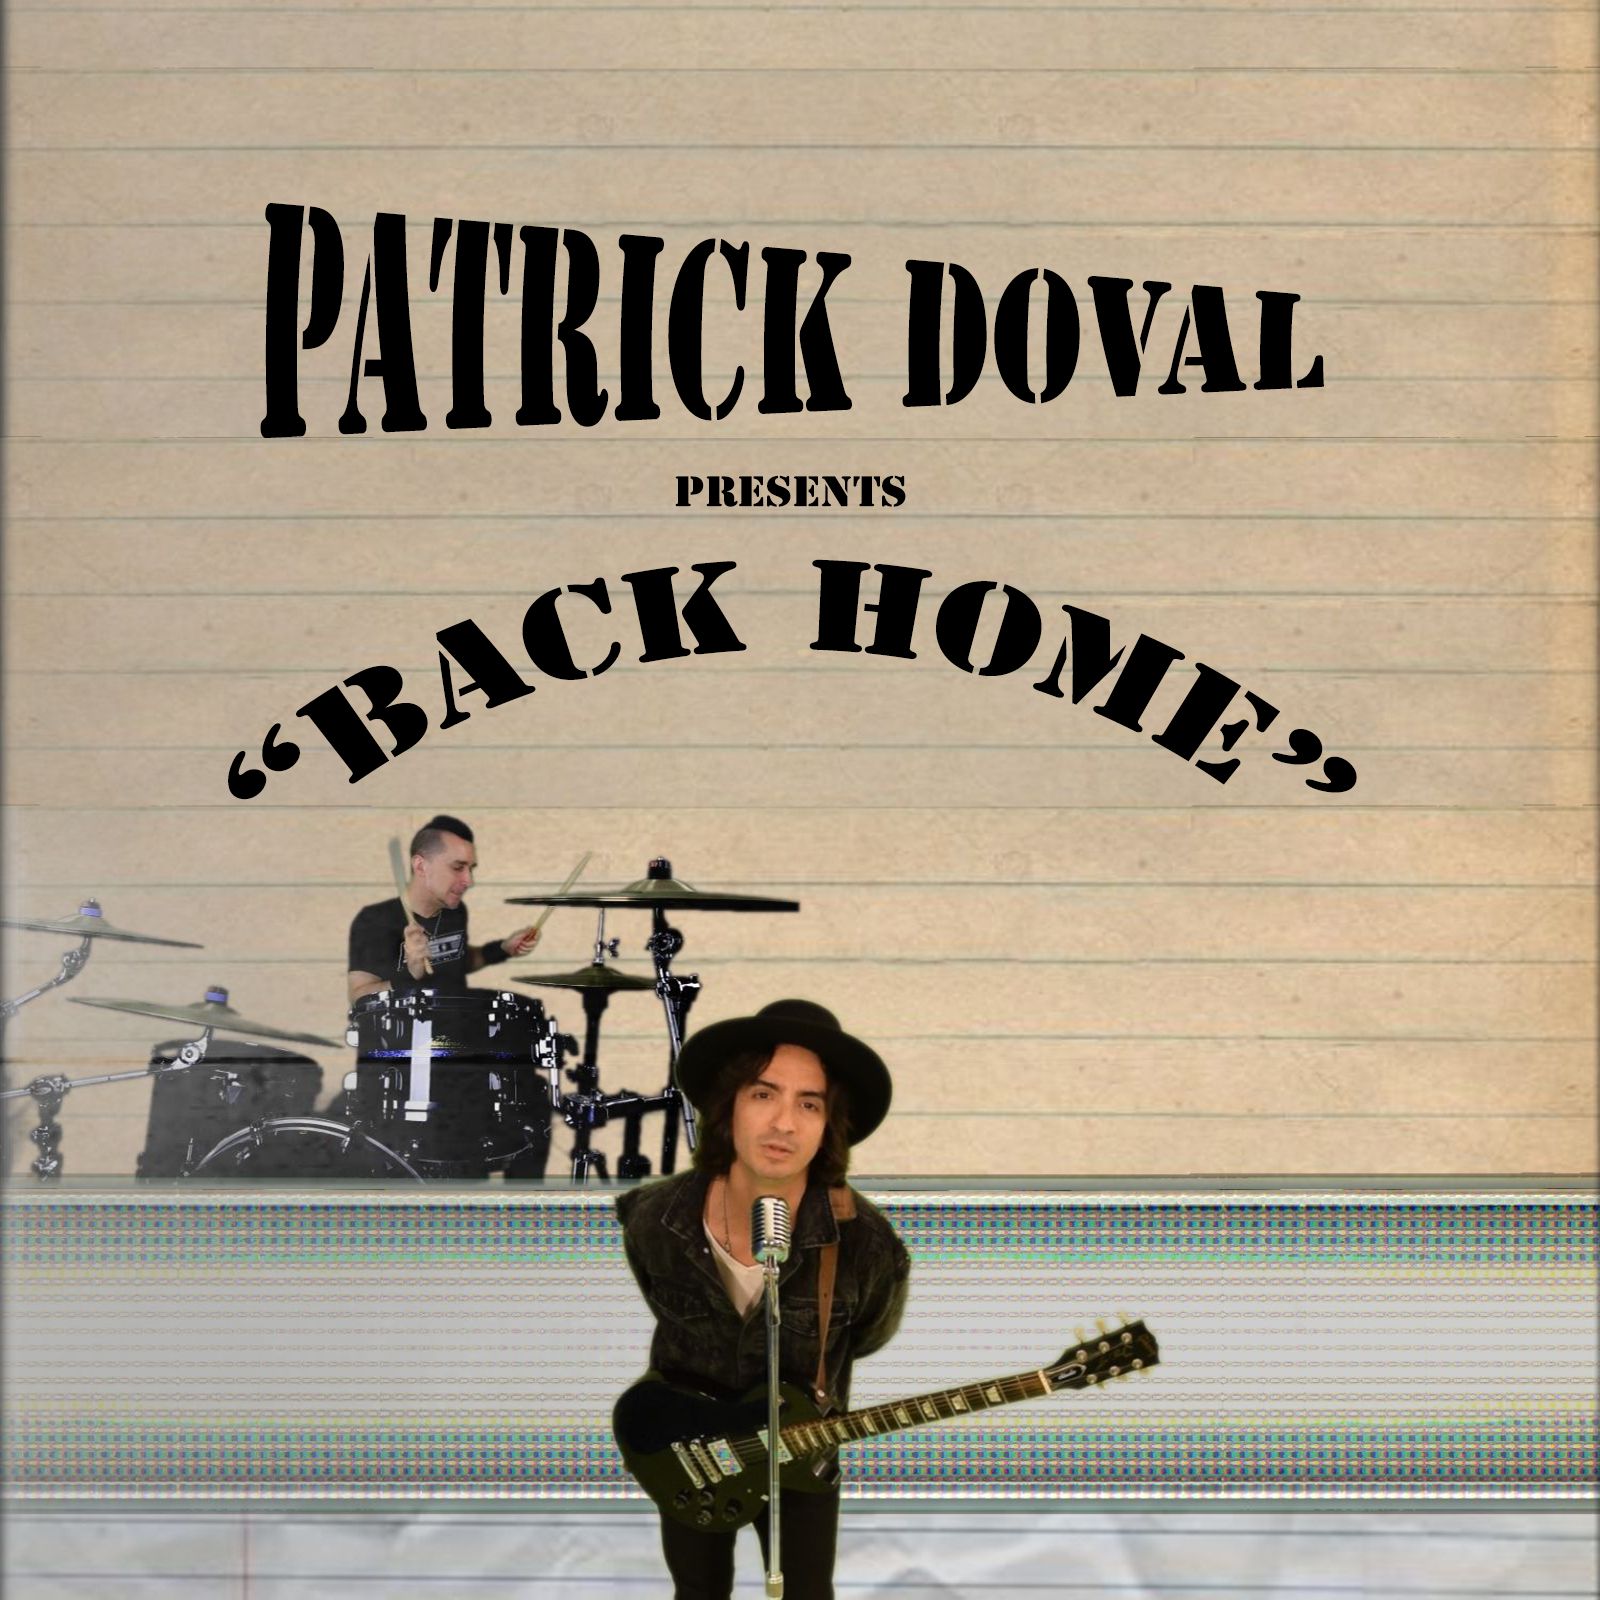 Patrick Doval “Back Home” single artwork